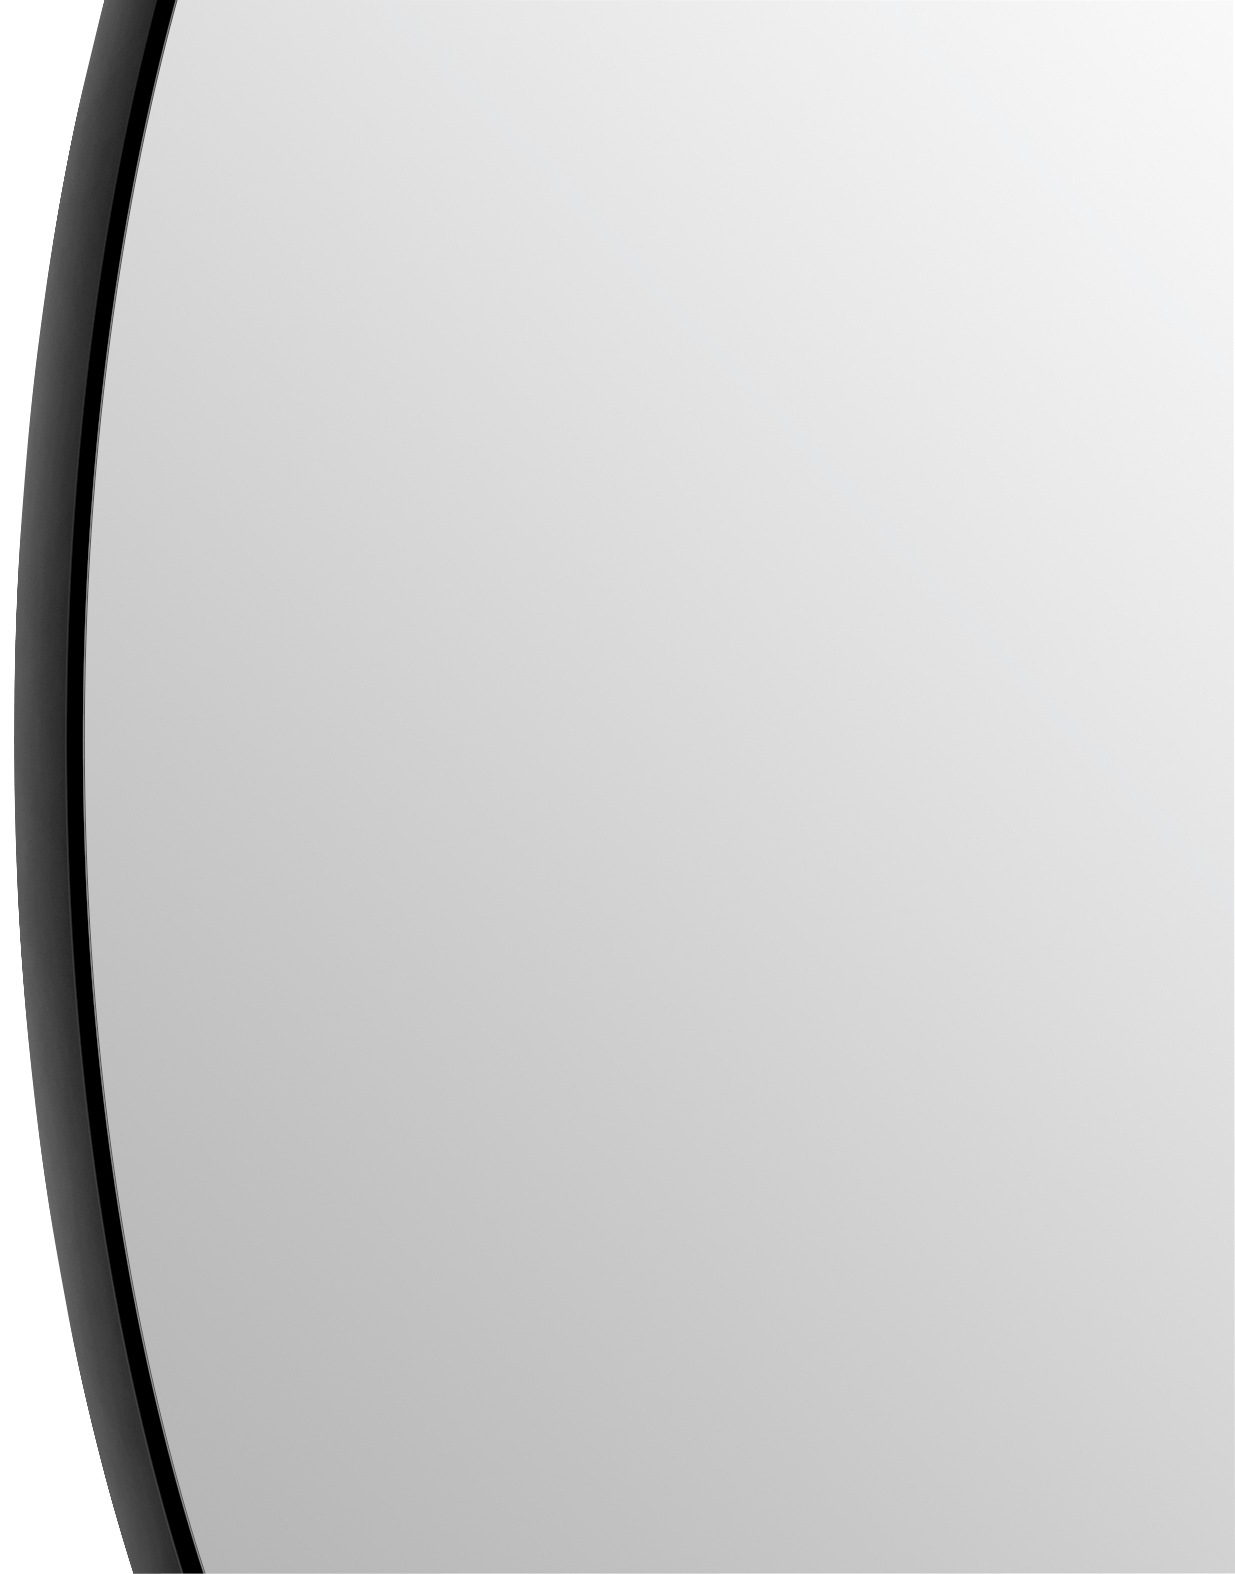 Talos LED-Lichtspiegel, rund, mit indirekter LED Beleuchtung in schwarz matt Ø 100 cm